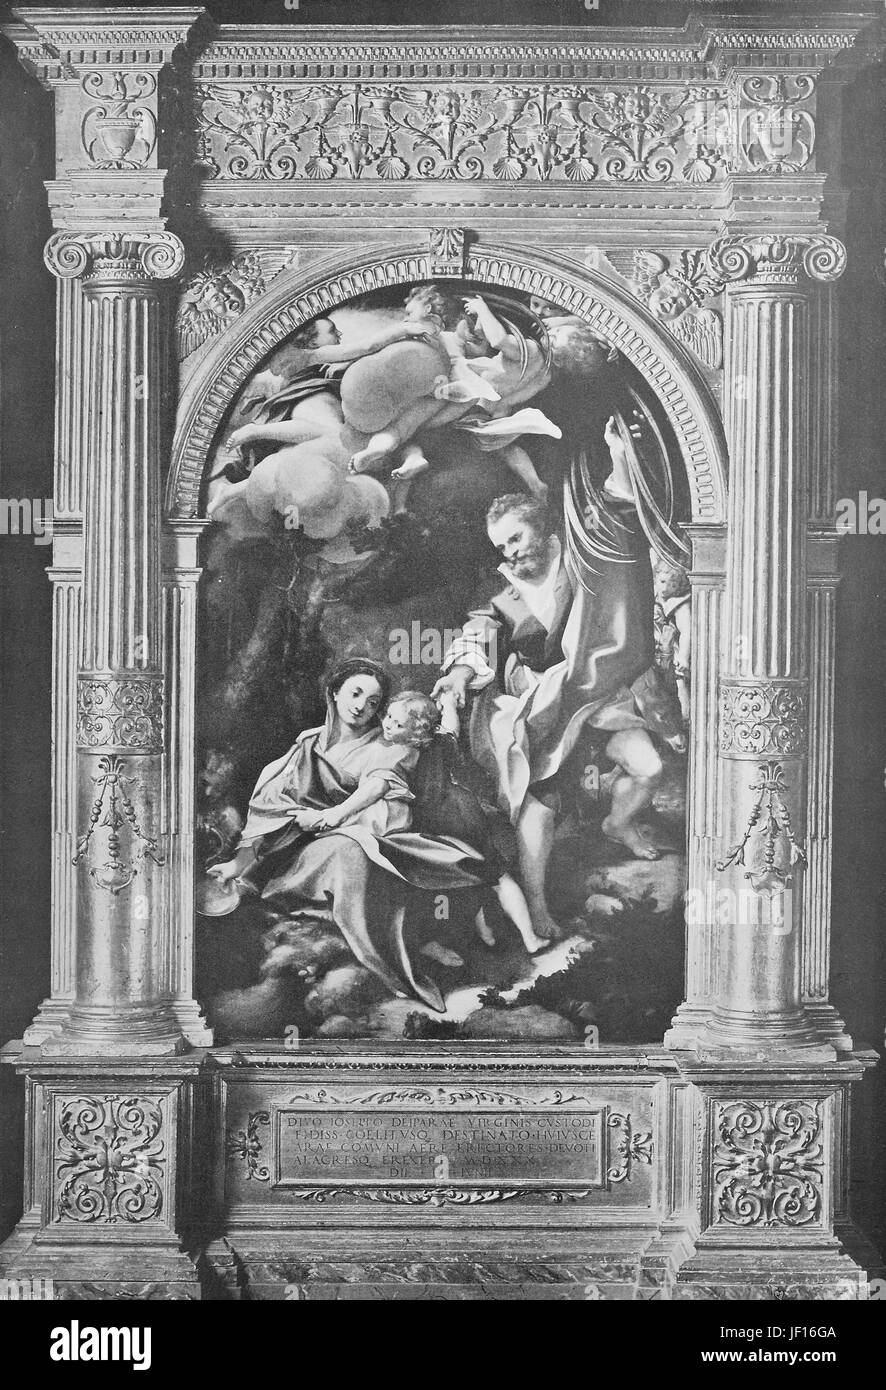 Photo historique de Madonna della Scodella, une peinture à l'huile d'Antonio da Correggio, Italie, amélioration numérique reproduction à partir d'un tirage original de 1890 Banque D'Images